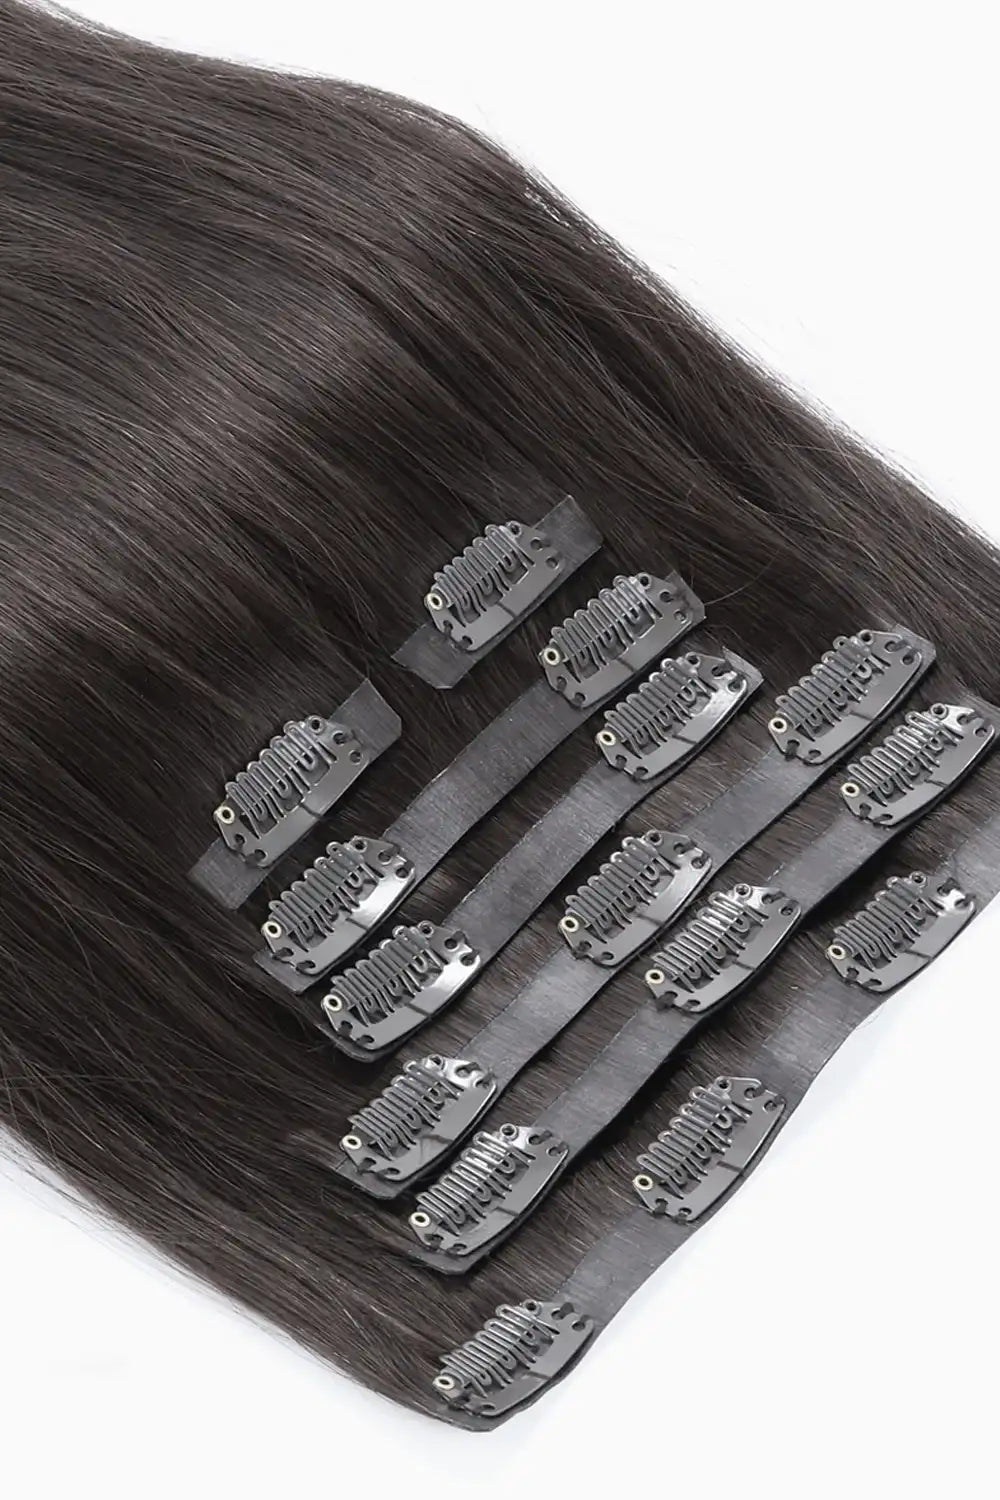 Extensiones de cabello con clip Light YaKi sin costuras, color negro natural, 7 piezas